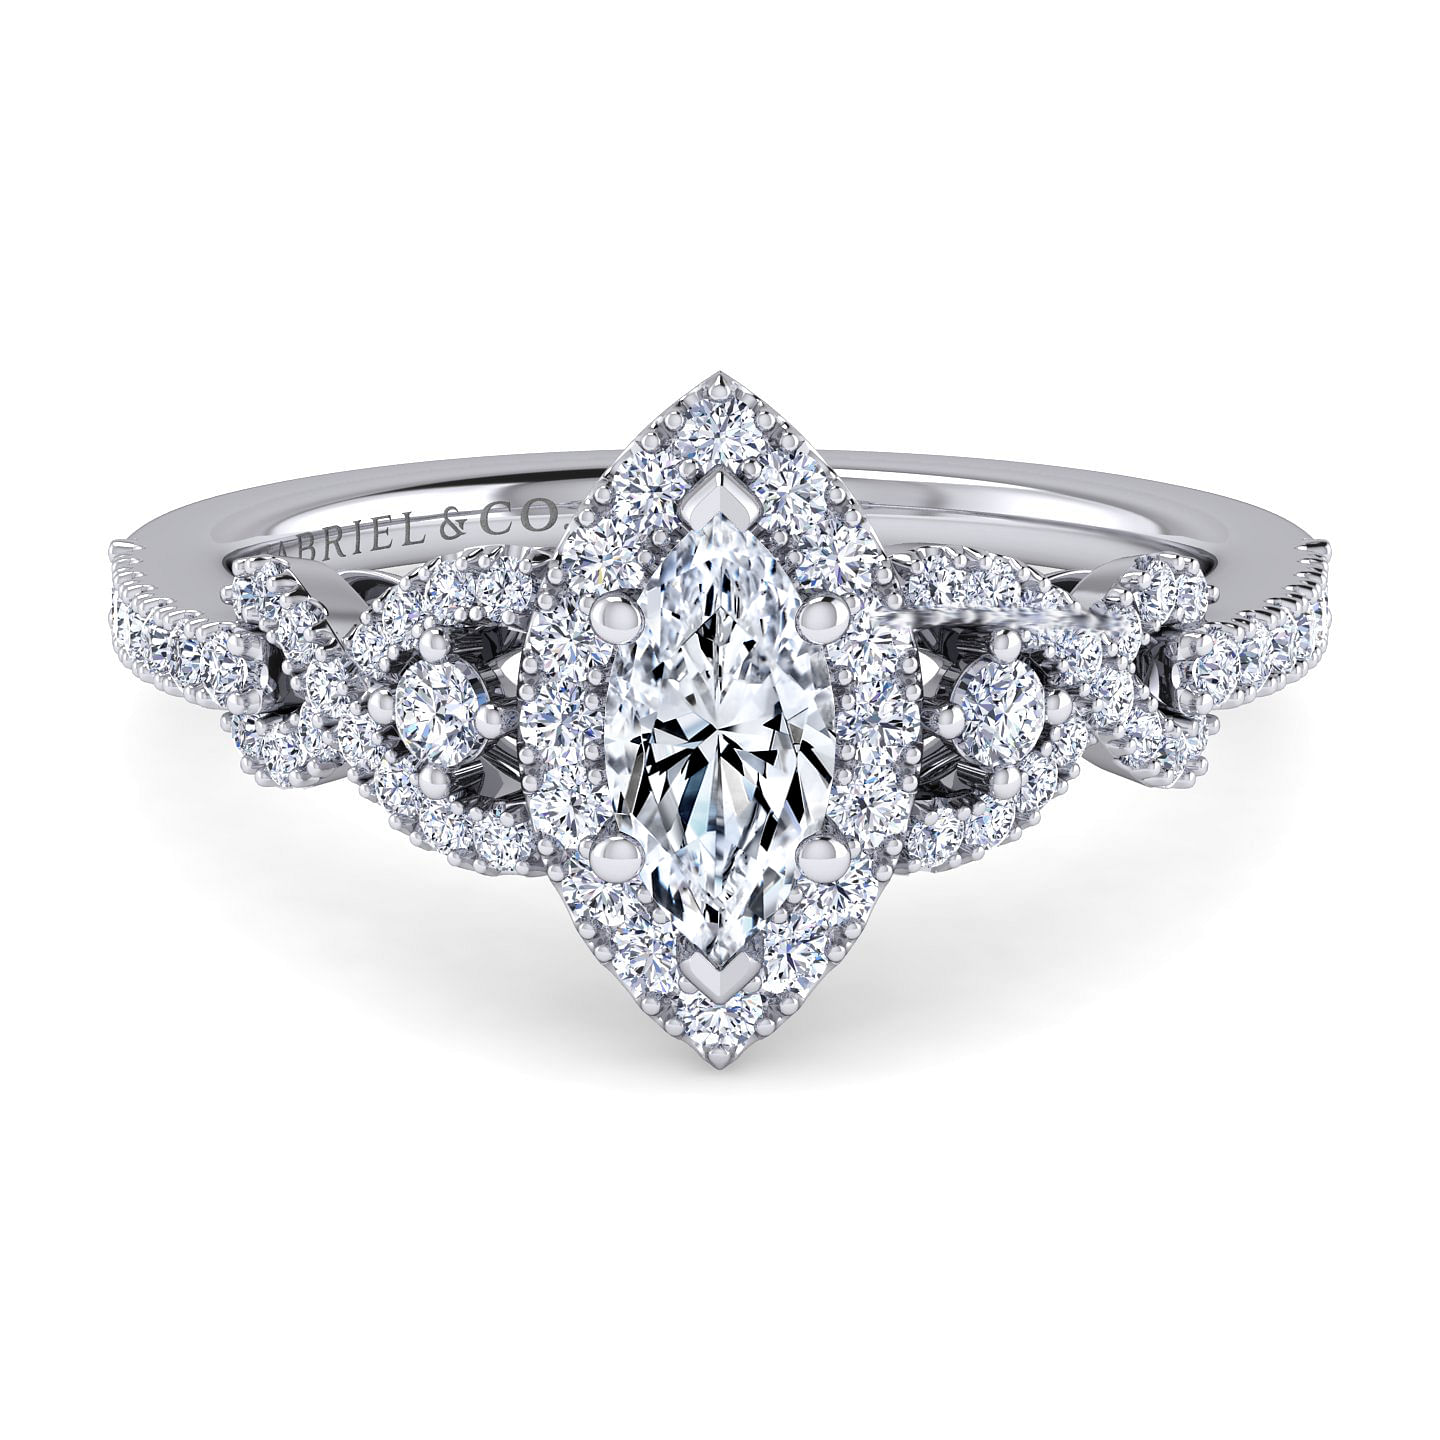 Kalinda---14K-White-Gold-Marquise-Shape-Three-Stone-Halo-Diamond-Engagement-Ring1